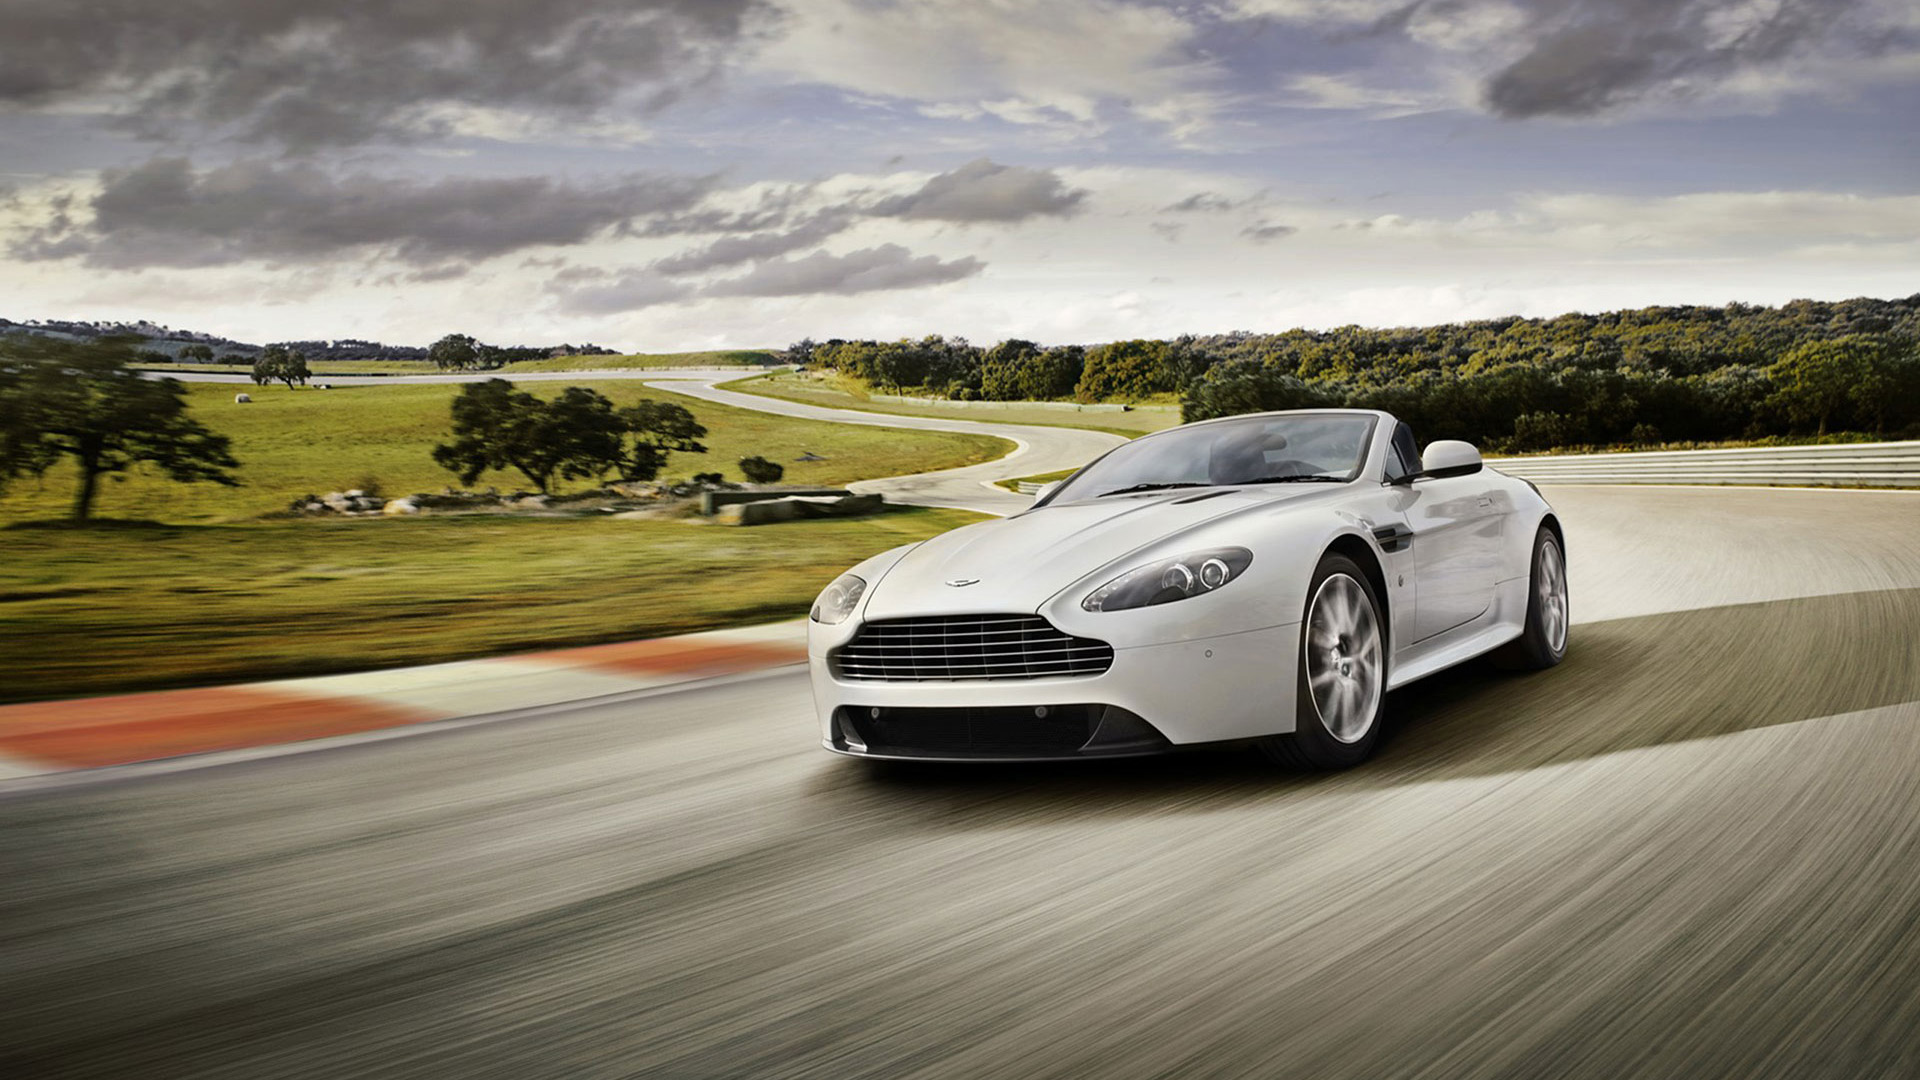  2011 Aston Martin V8 Vantage S Wallpaper.